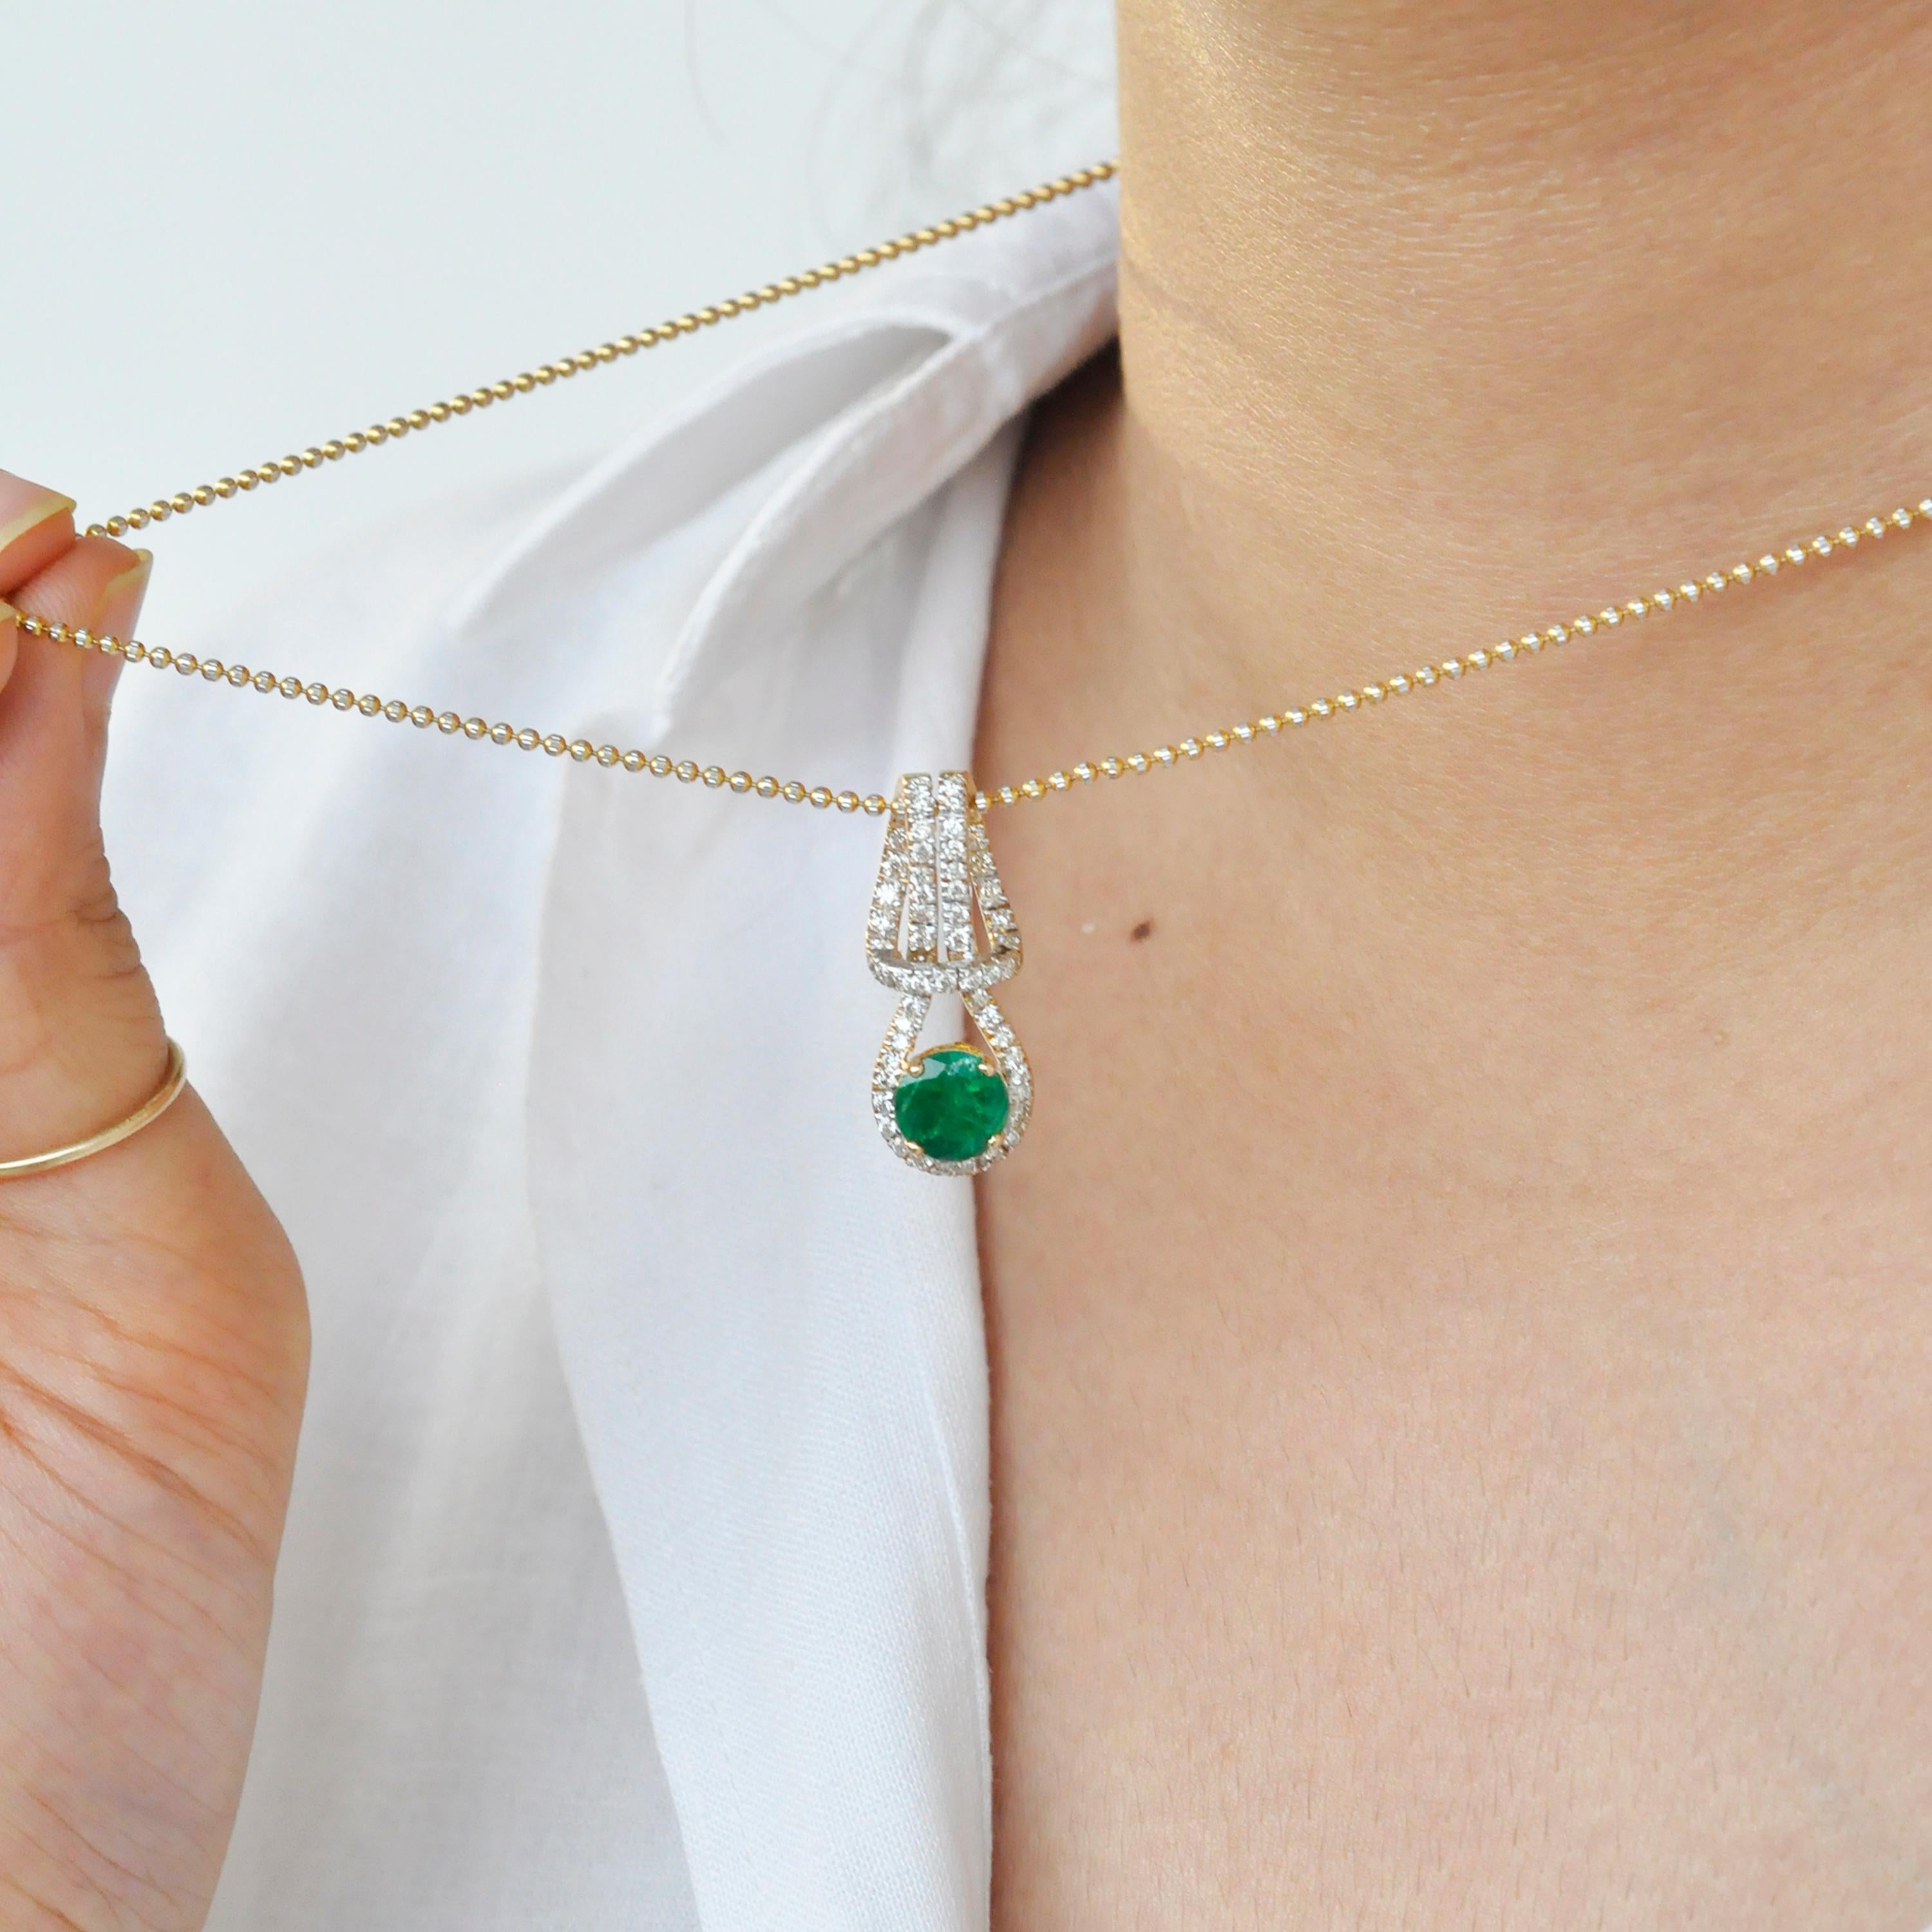 zambian emerald pendant